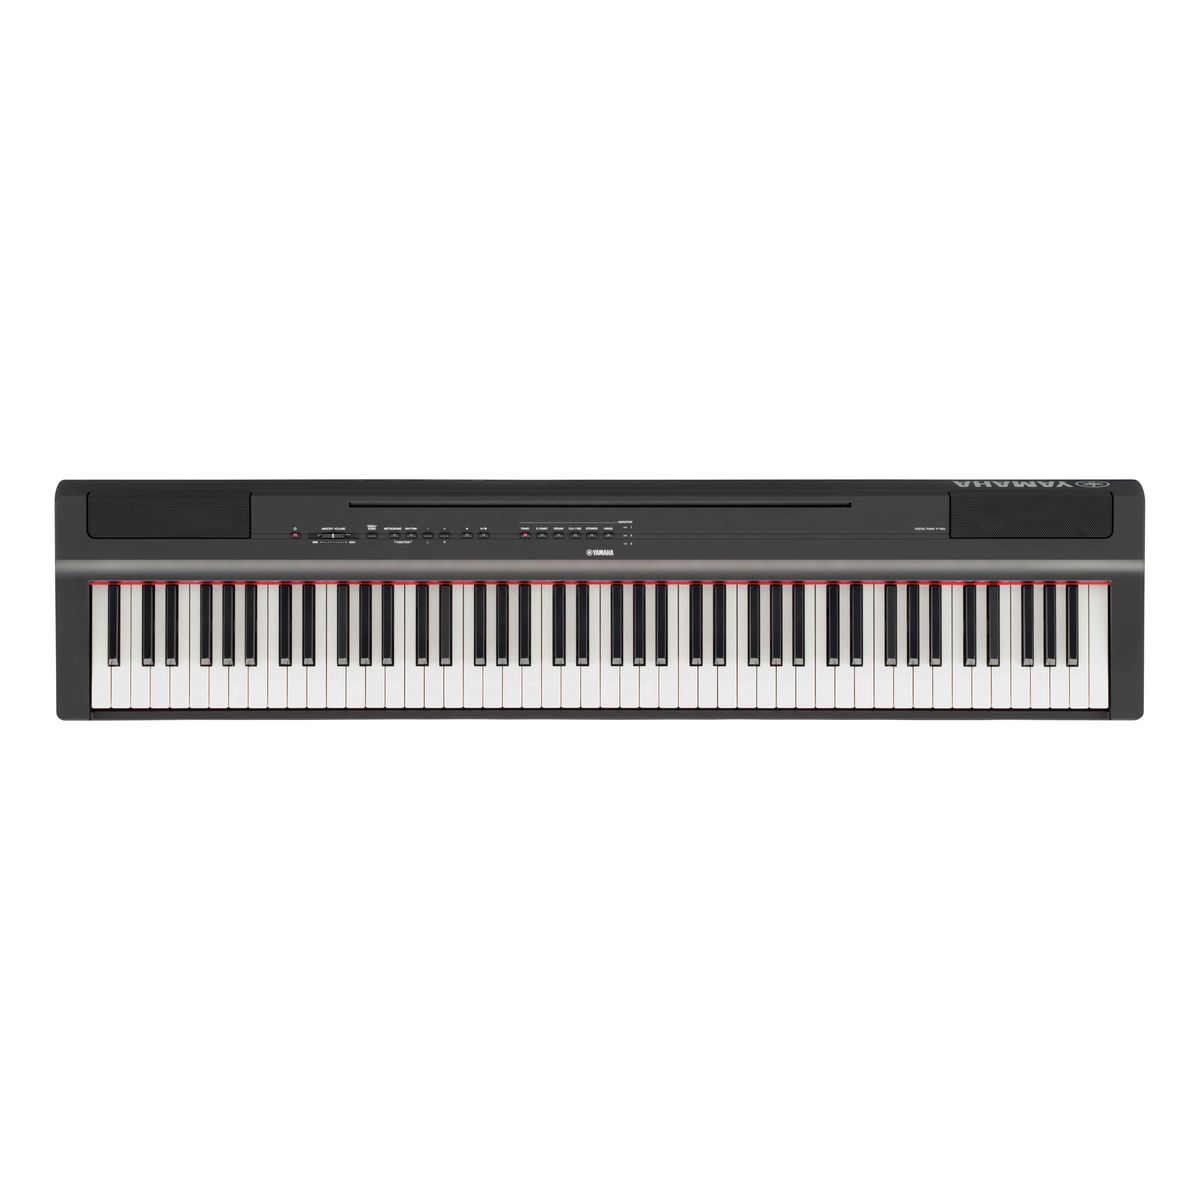 Цифровые пианино Yamaha P-125aB 88 клавишной клавиатурой электронных пианино крышка pleuche липучки украшен бахромой красивые